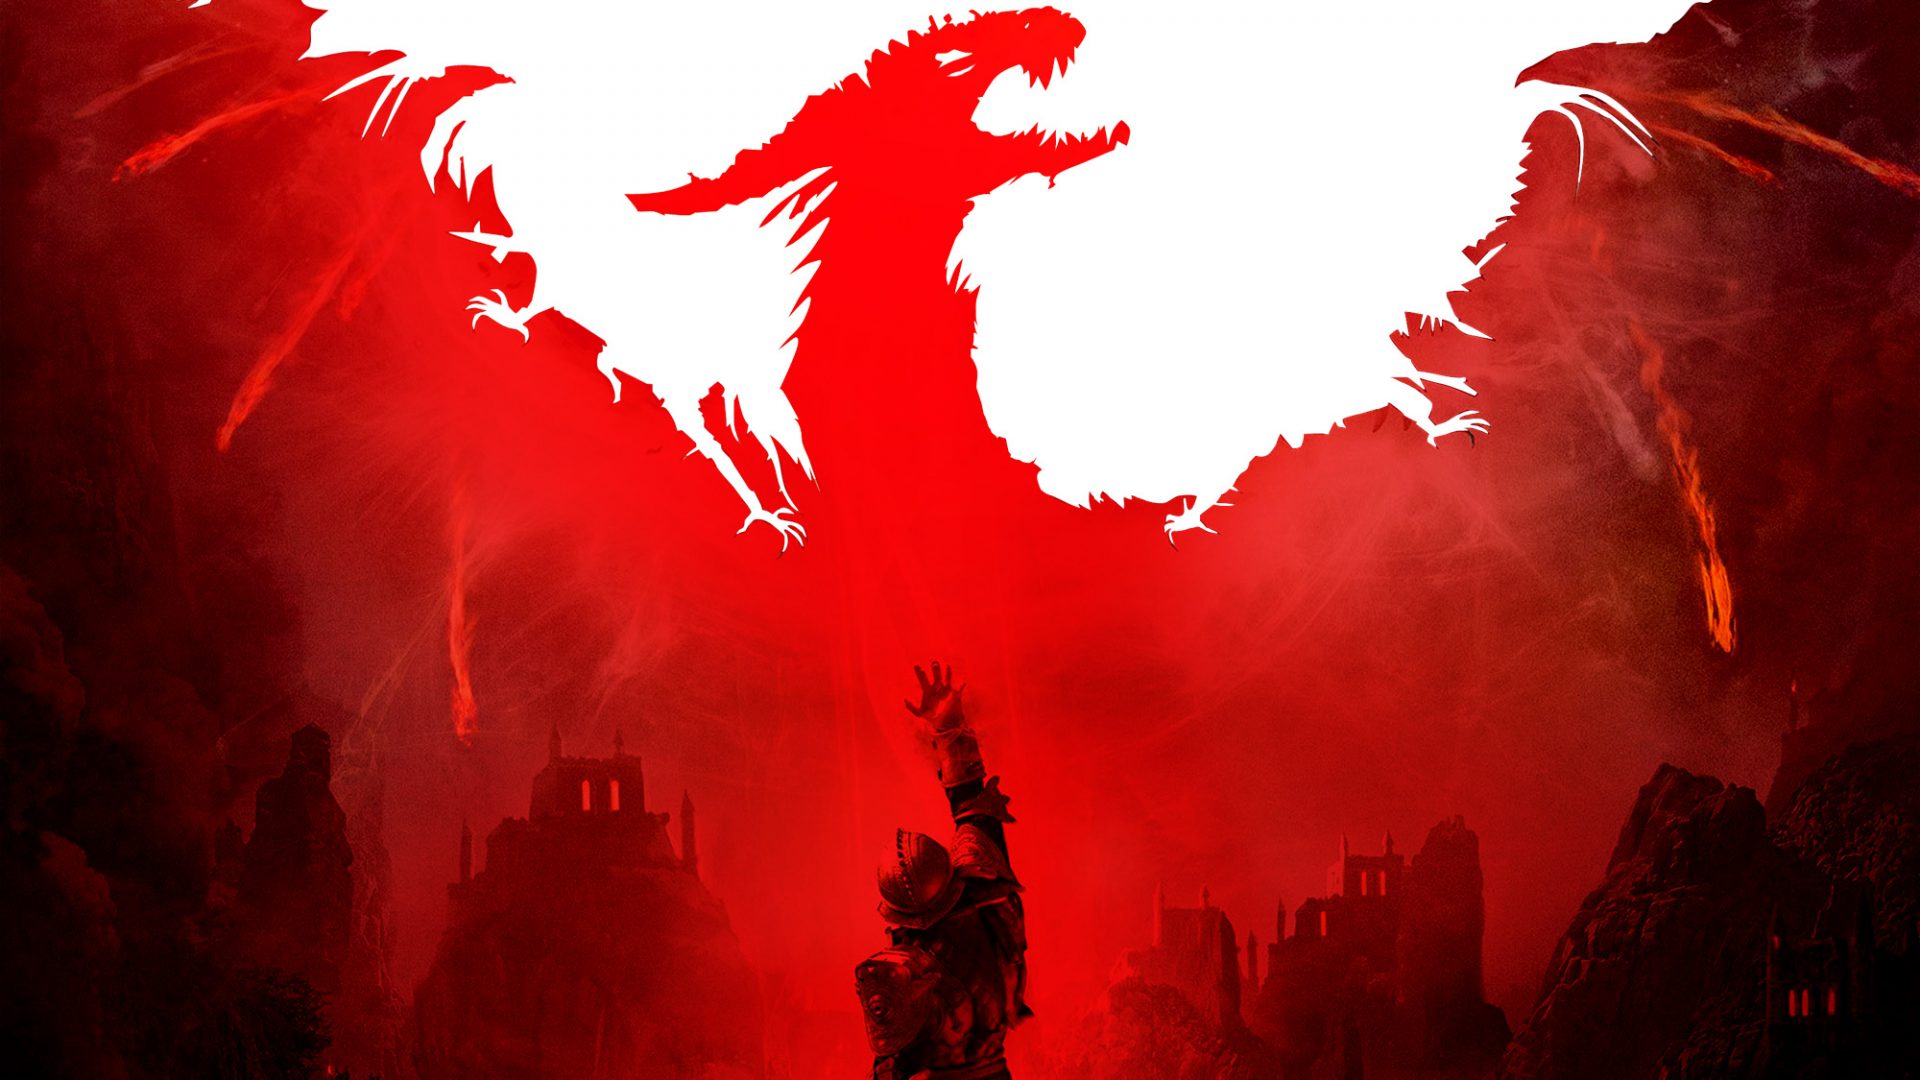 หัวหน้าทีมพัฒนา Dragon Age ประกาศลาออกจาก Bioware พร้อมเผยว่า Dragon Age ภาคใหม่กำลังไปได้ด้วยดี